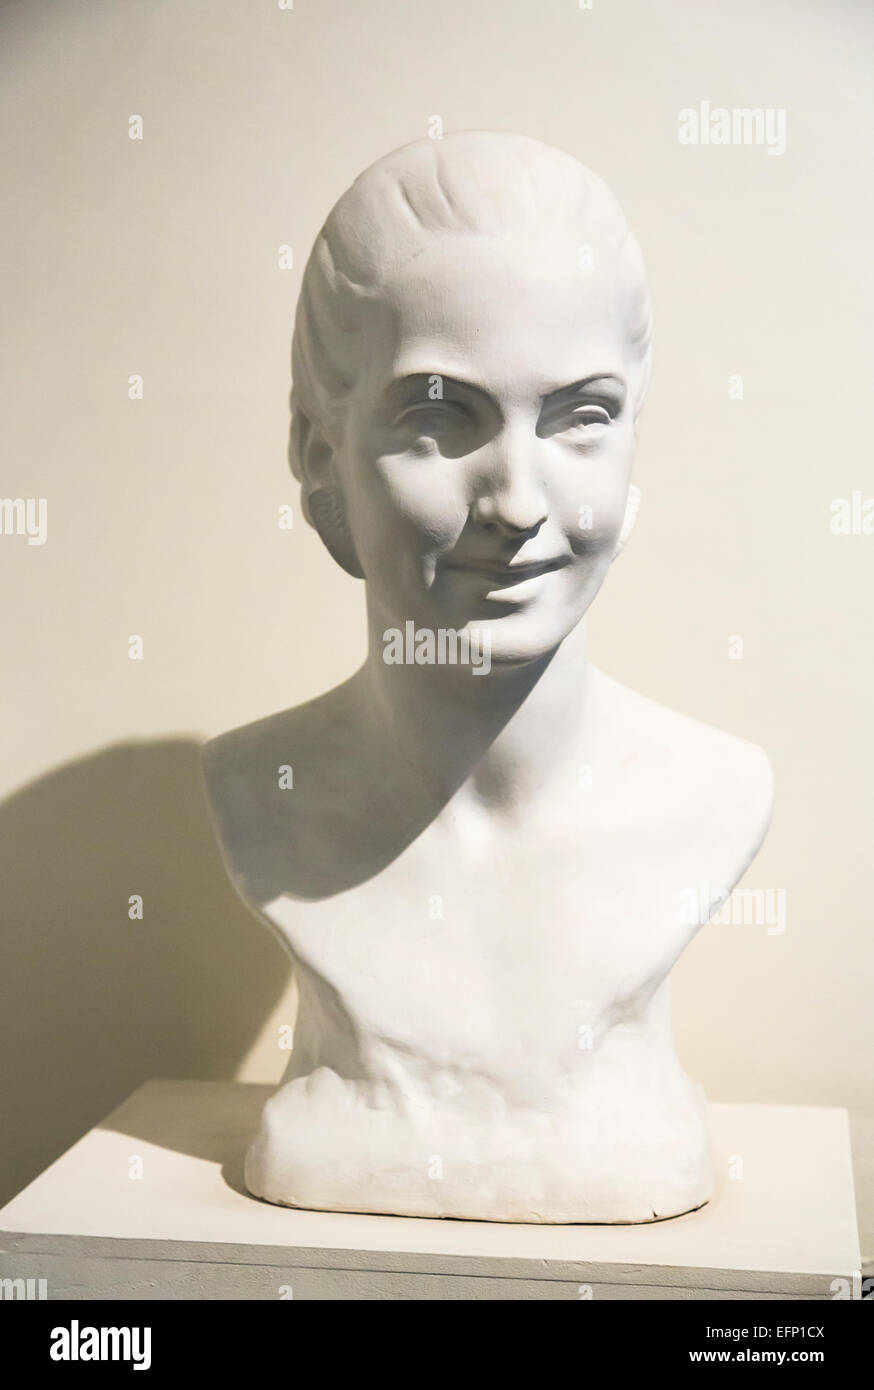 Buste blanc d'Evita Peron, une exposition sur l'affichage dans le musée Evita, Maria Eva Duarte de Peron de la Fondation de l'aide sociale, Buenos Aires, Argentine Banque D'Images